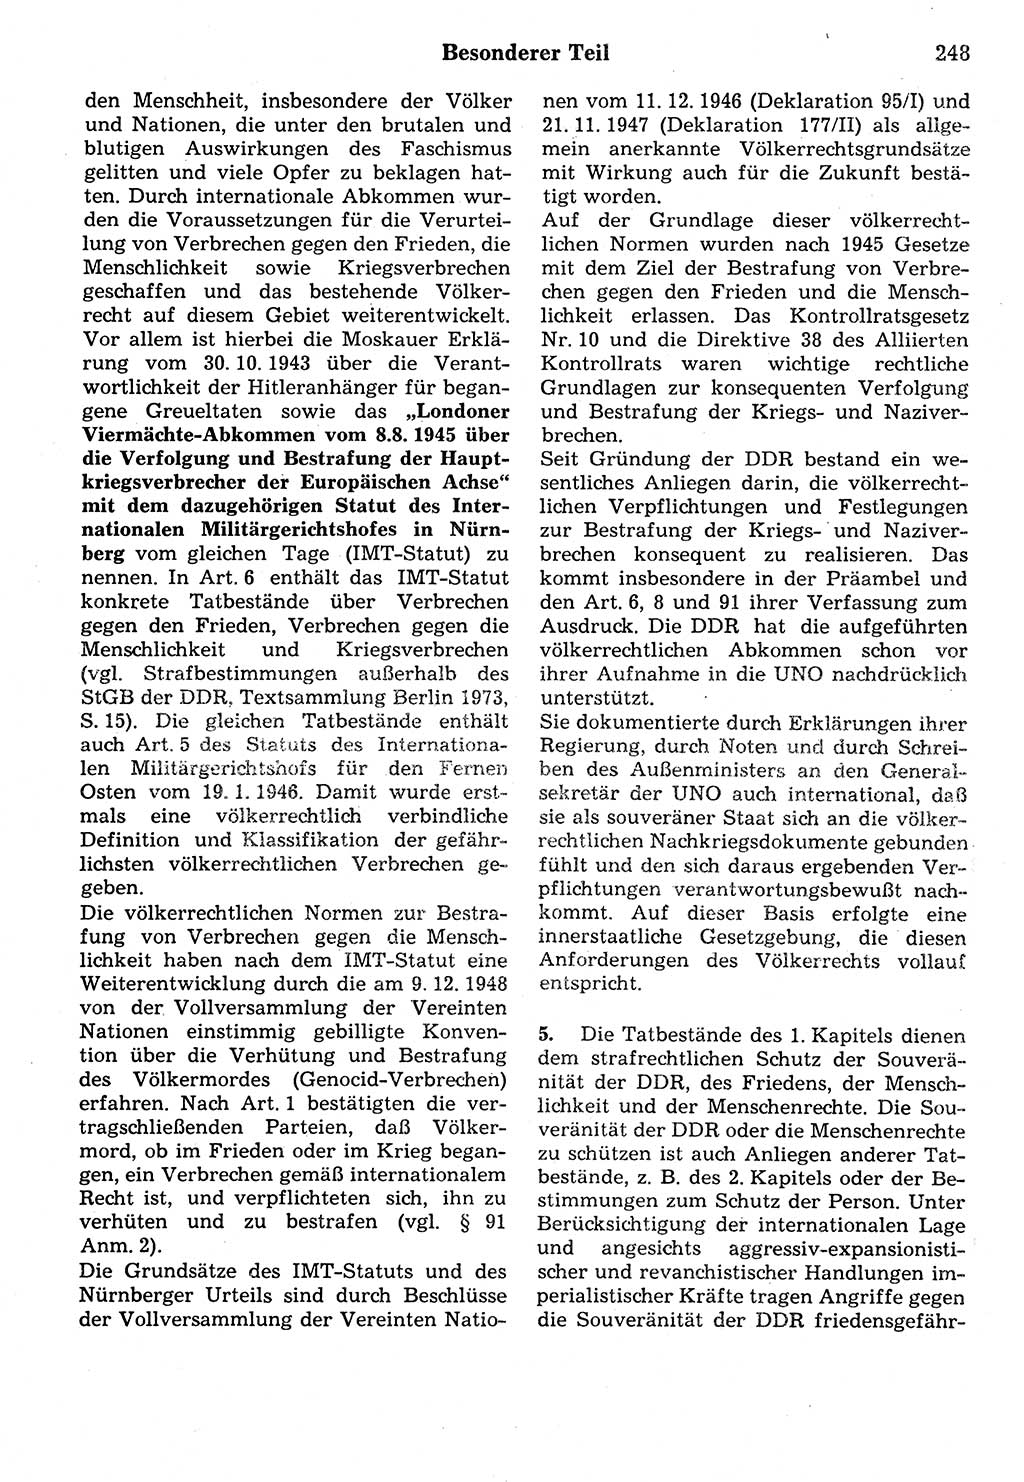 Strafrecht der Deutschen Demokratischen Republik (DDR), Kommentar zum Strafgesetzbuch (StGB) 1987, Seite 248 (Strafr. DDR Komm. StGB 1987, S. 248)